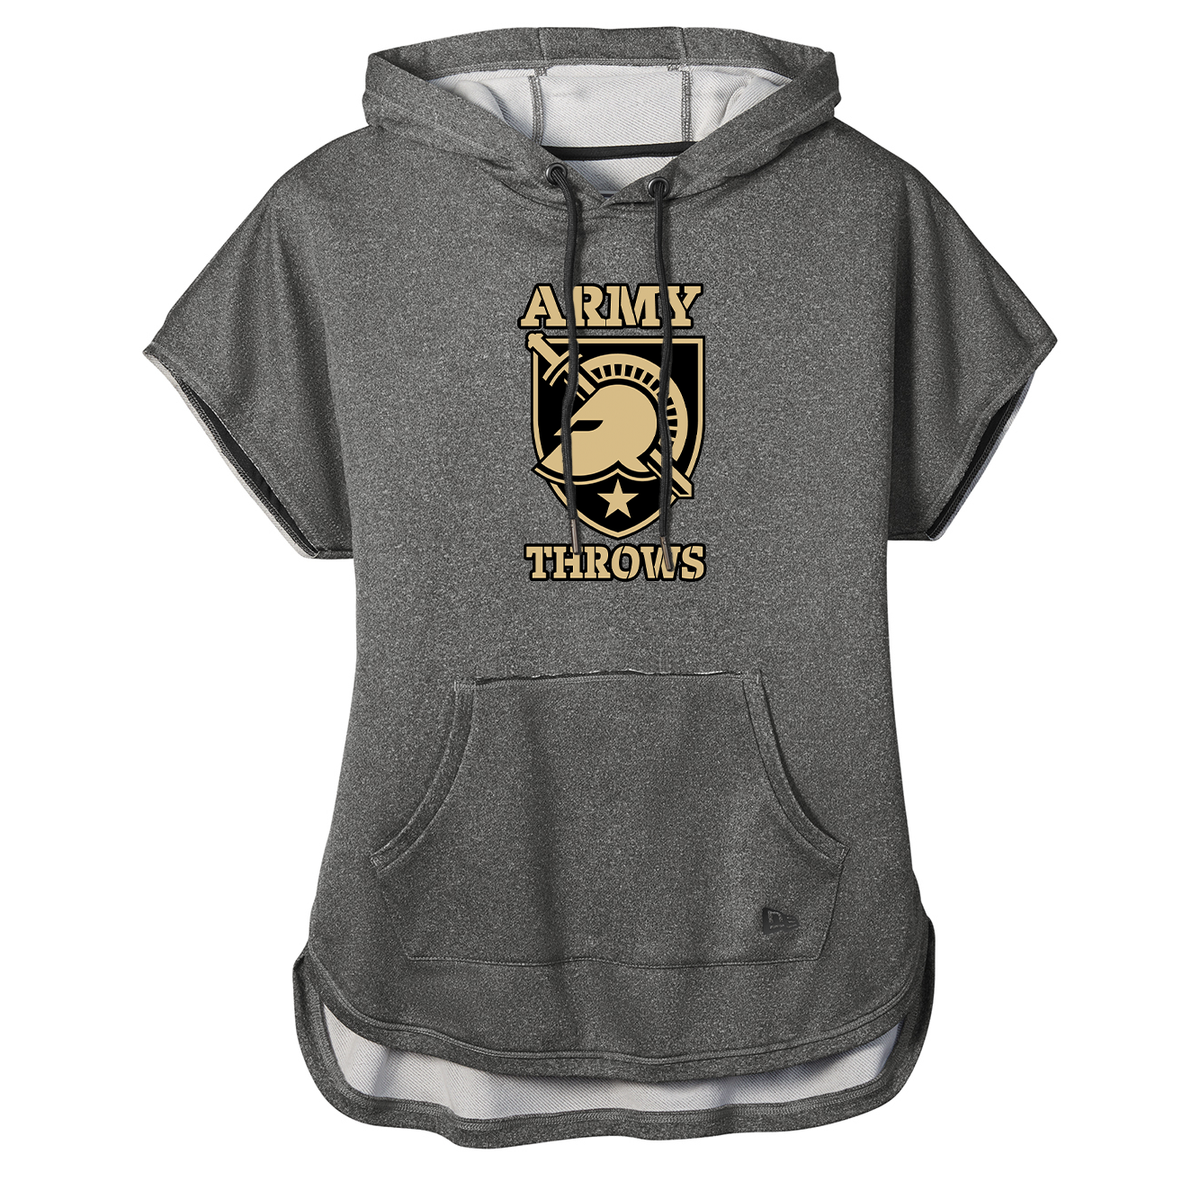 Army Throws Ladies Performance Short Sleeve Hoodie